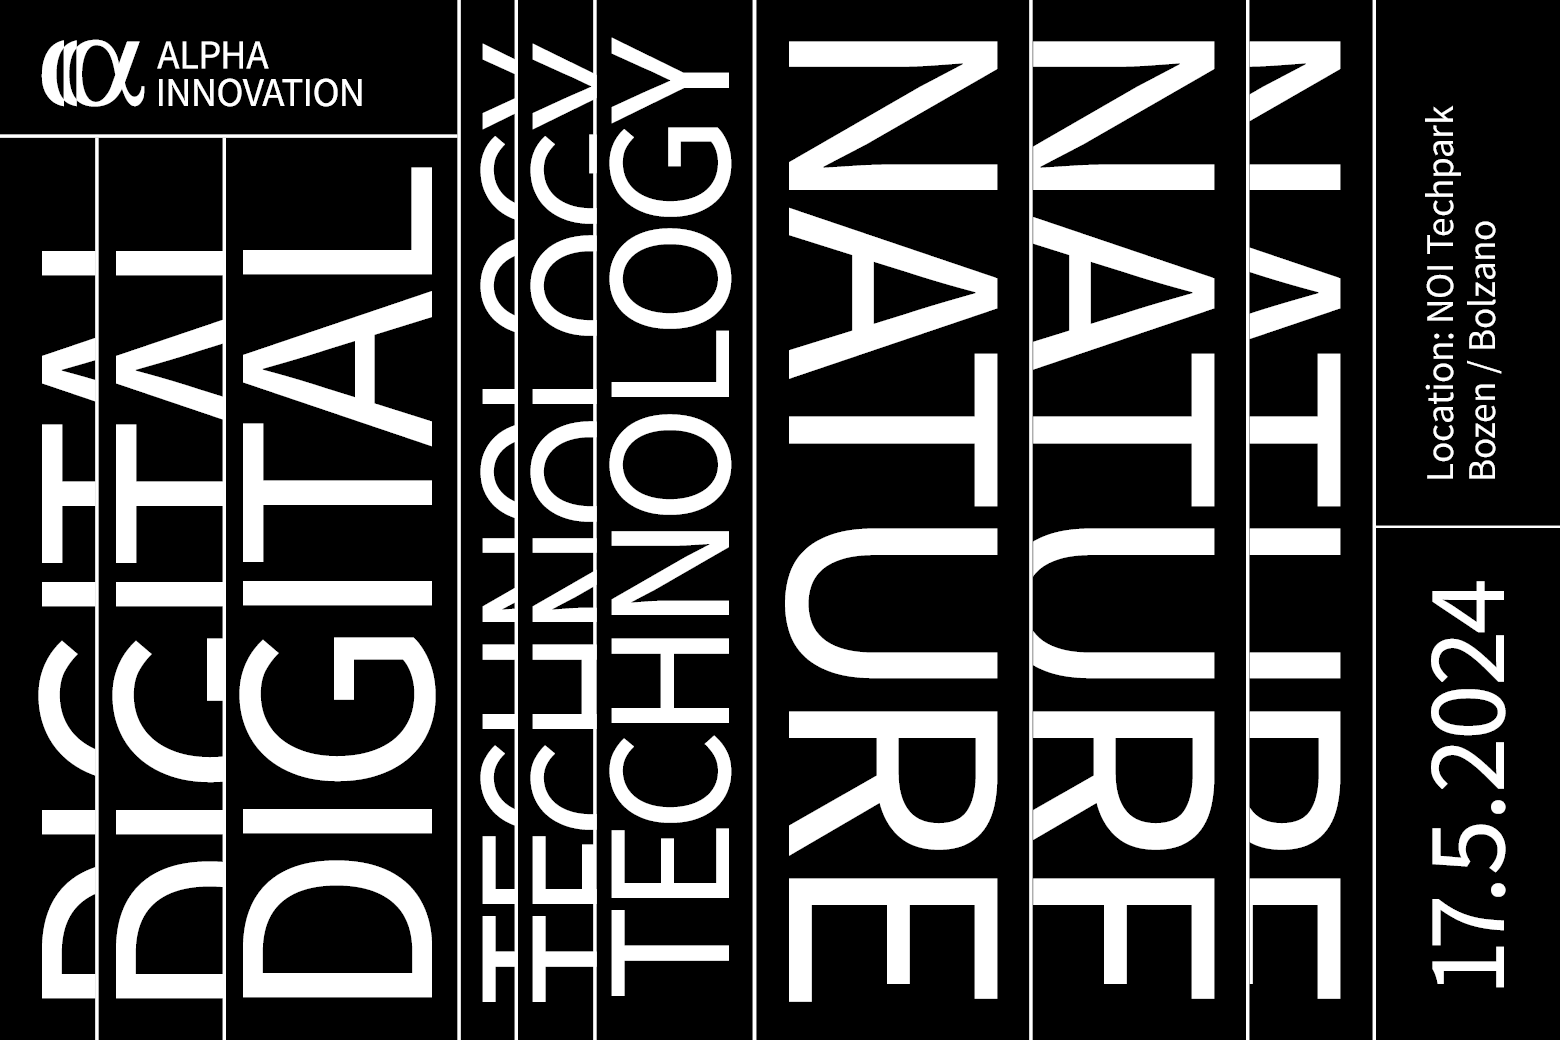 Digital Technologies for Nature: Creare un’Economia Sostenibile per l’Ambiente con Soluzioni Digitali. 